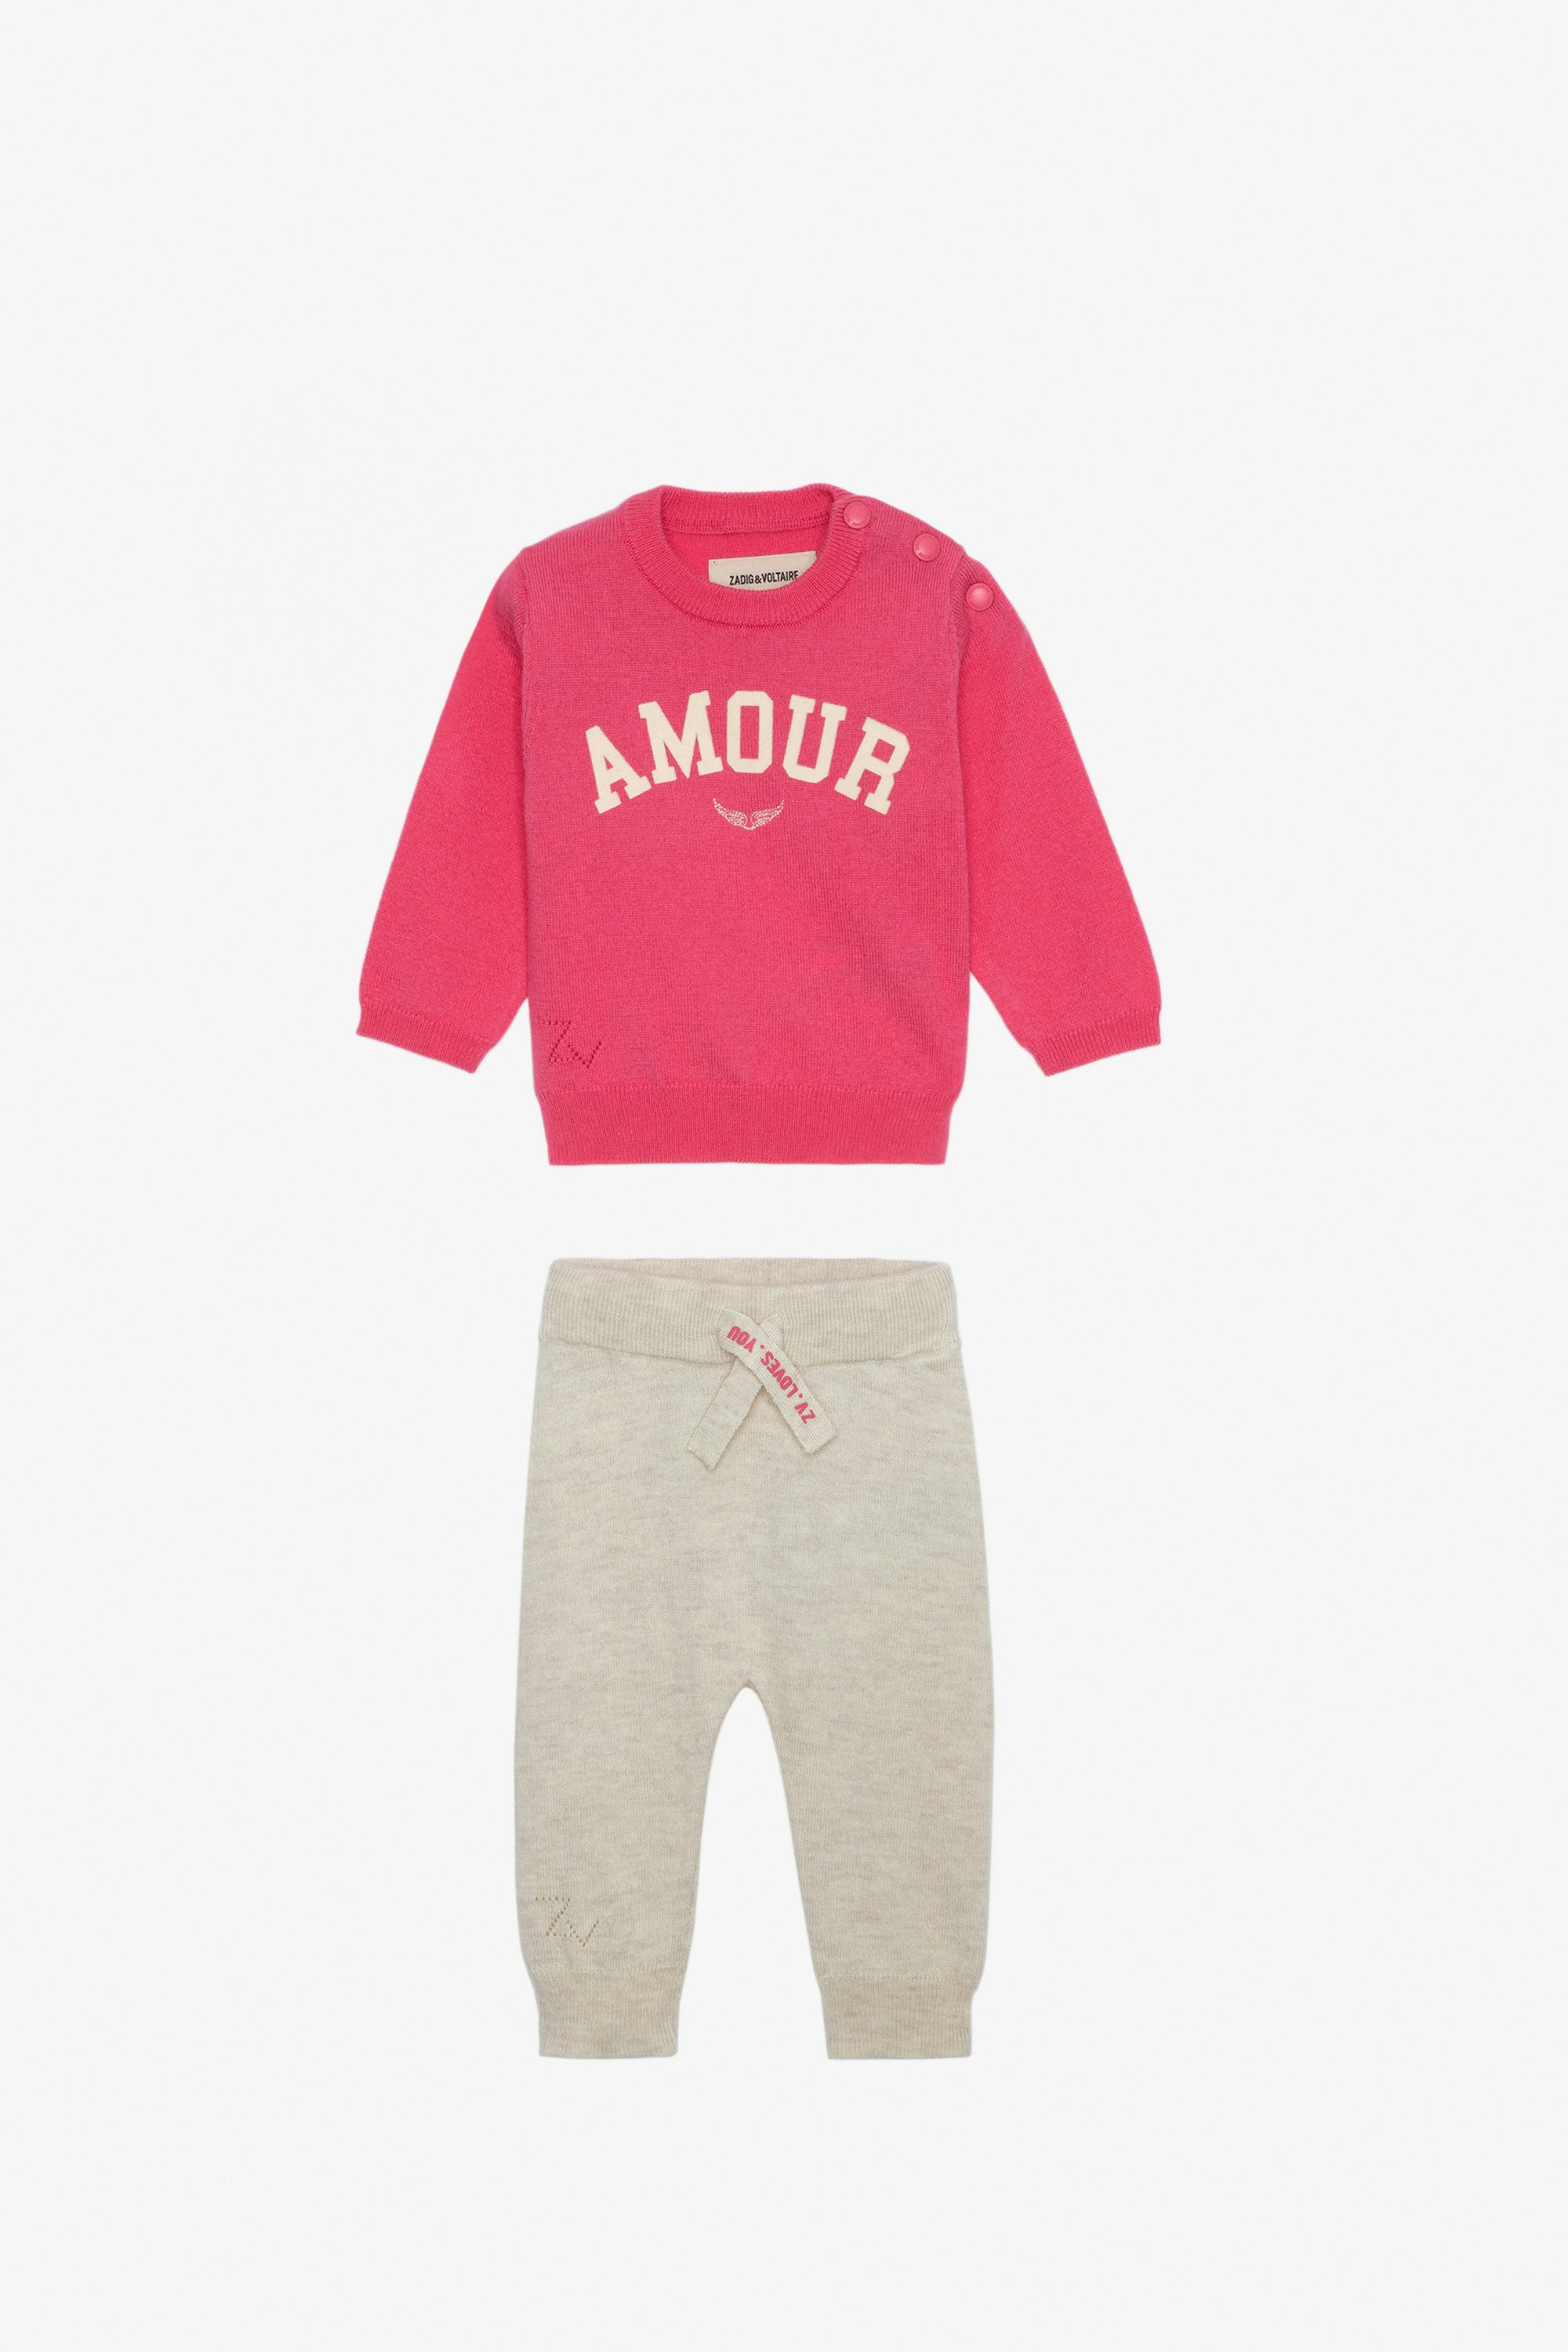 Conjunto Pona Bebé - Conjunto de jersey con mensaje «Amour» y de pantalón rosa de punto para bebé.